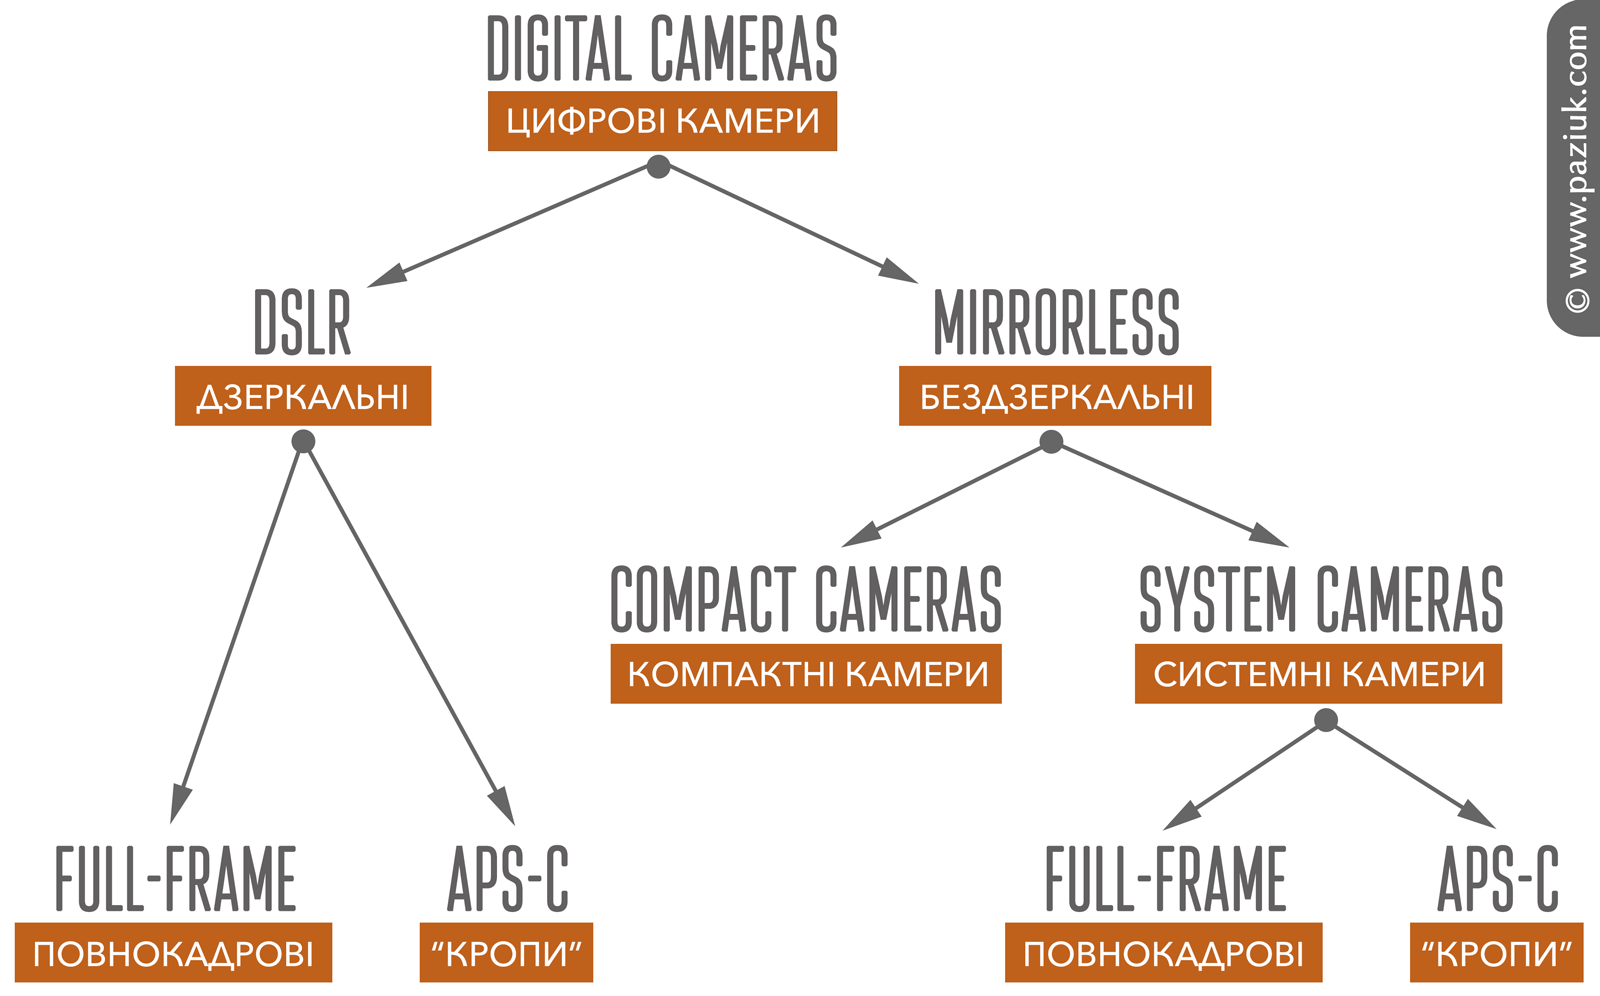 types of digital cameras